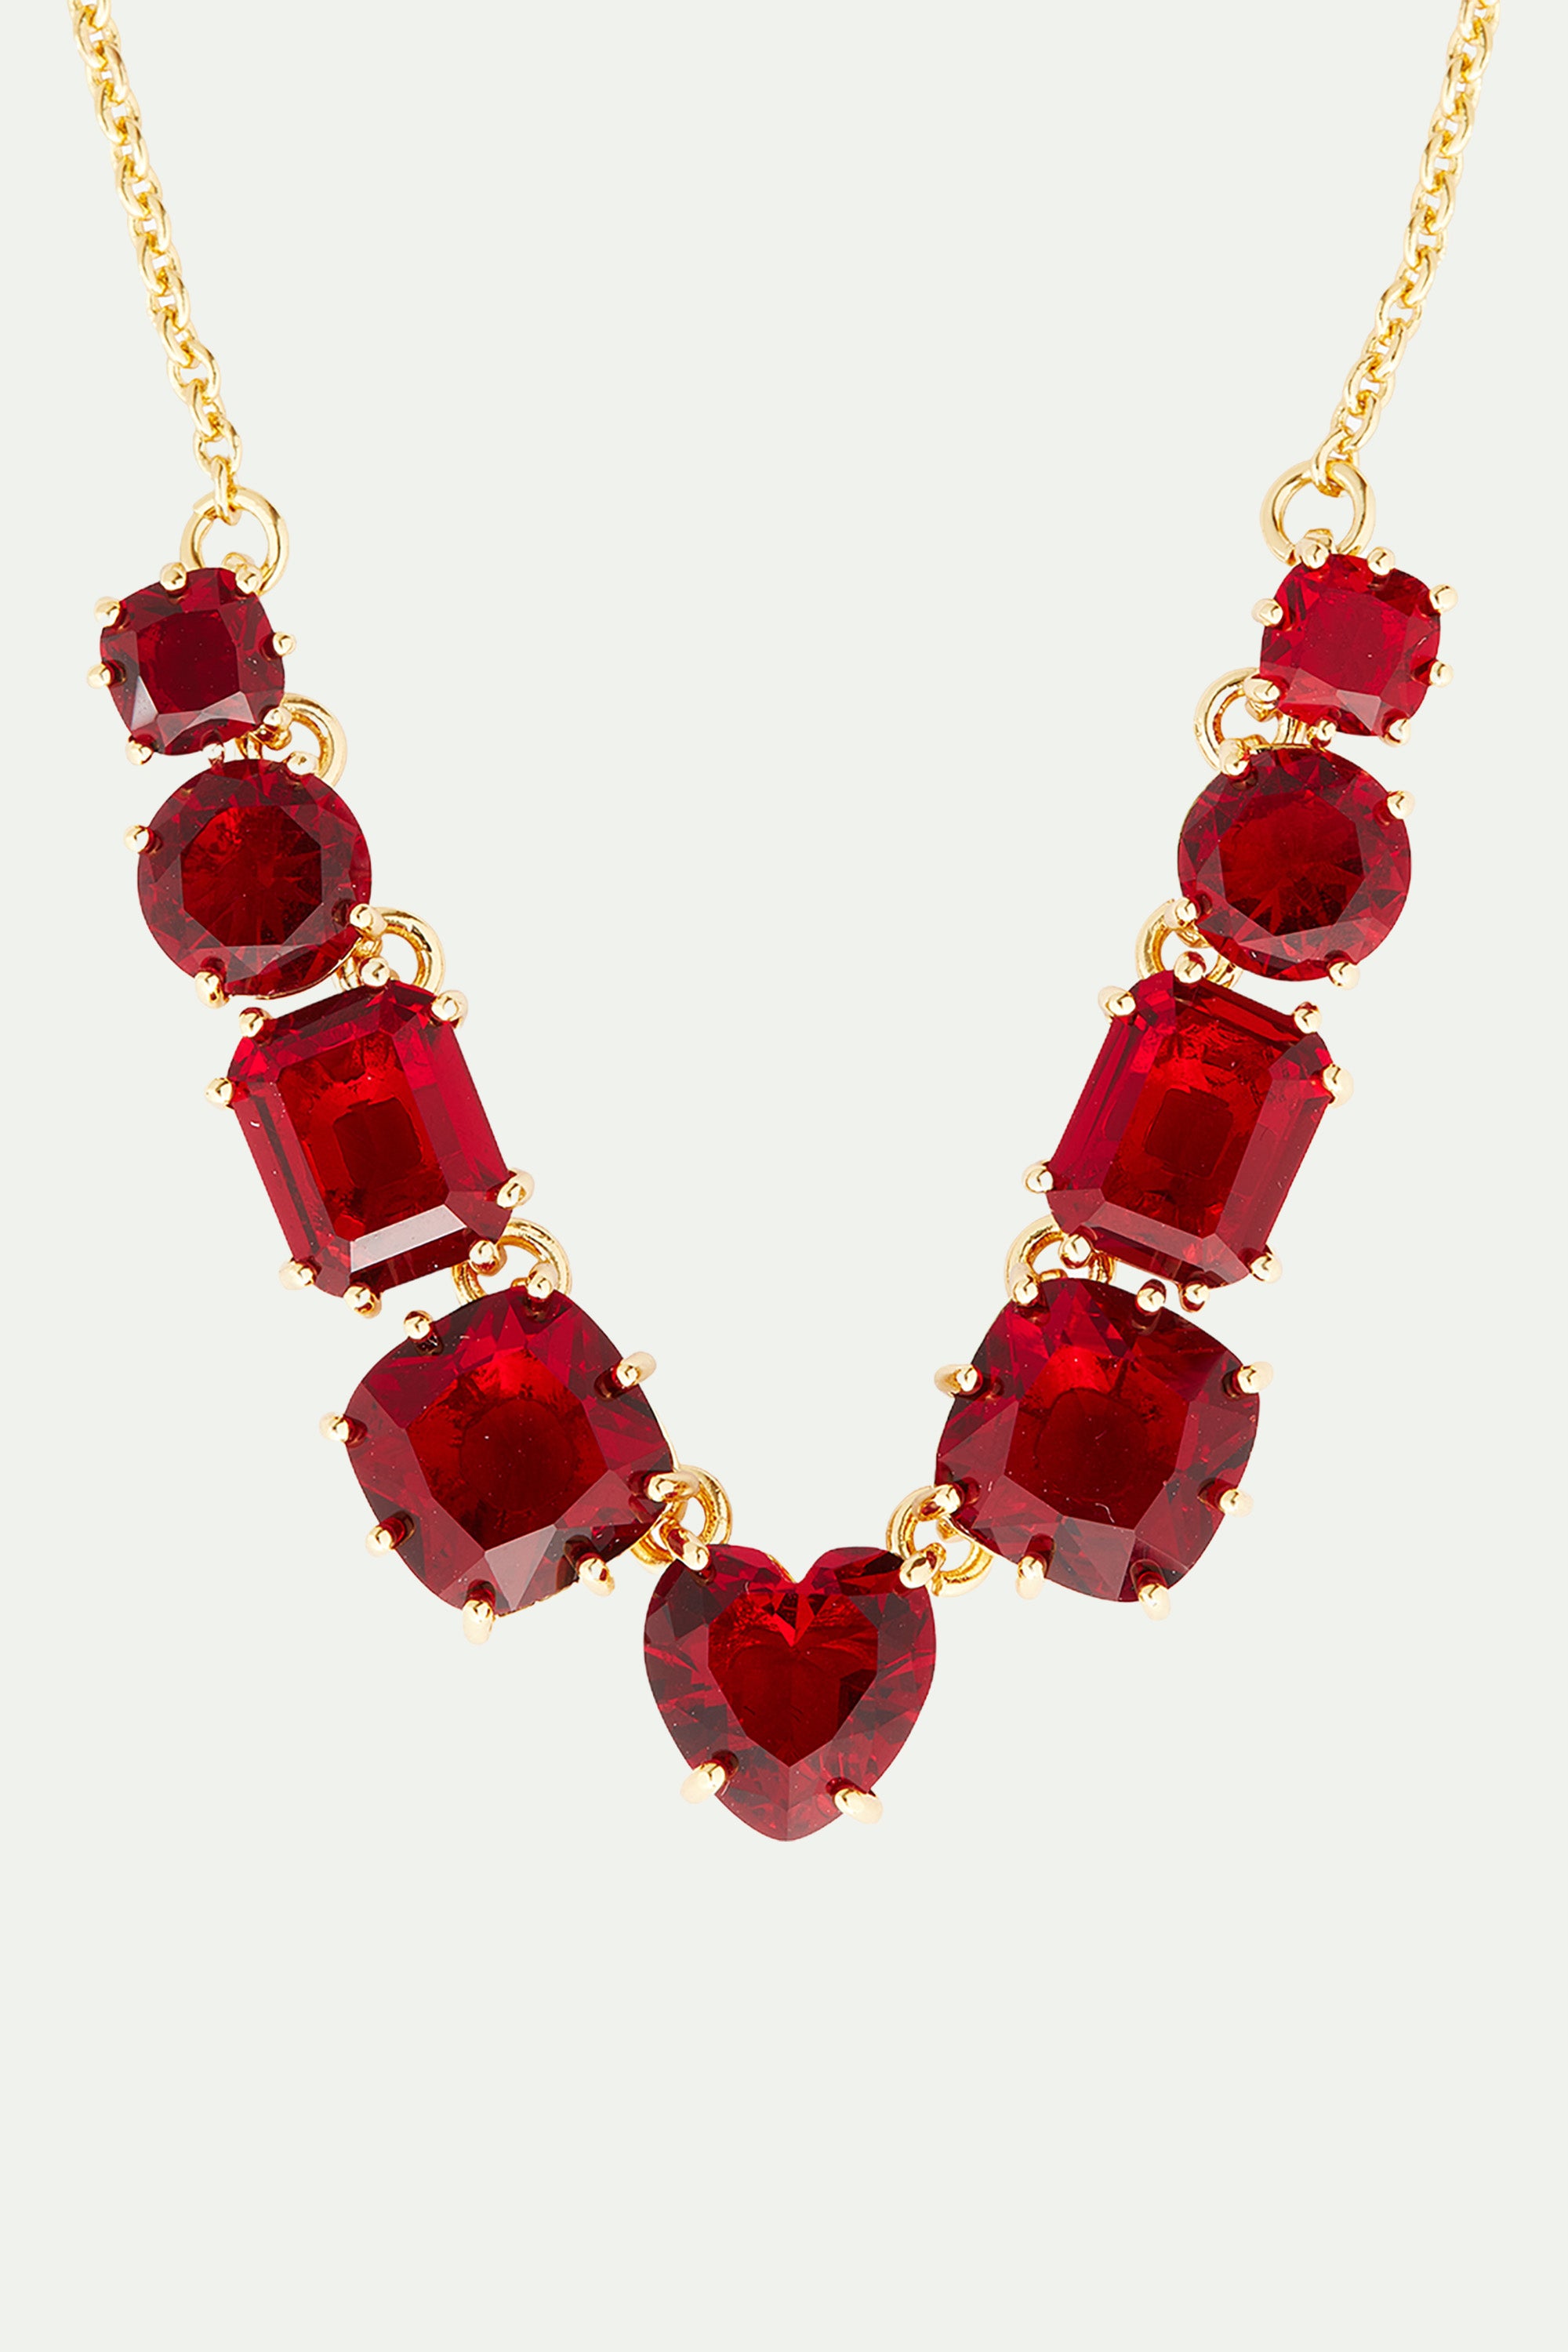 Garnet red diamantine 9 stone fine necklace